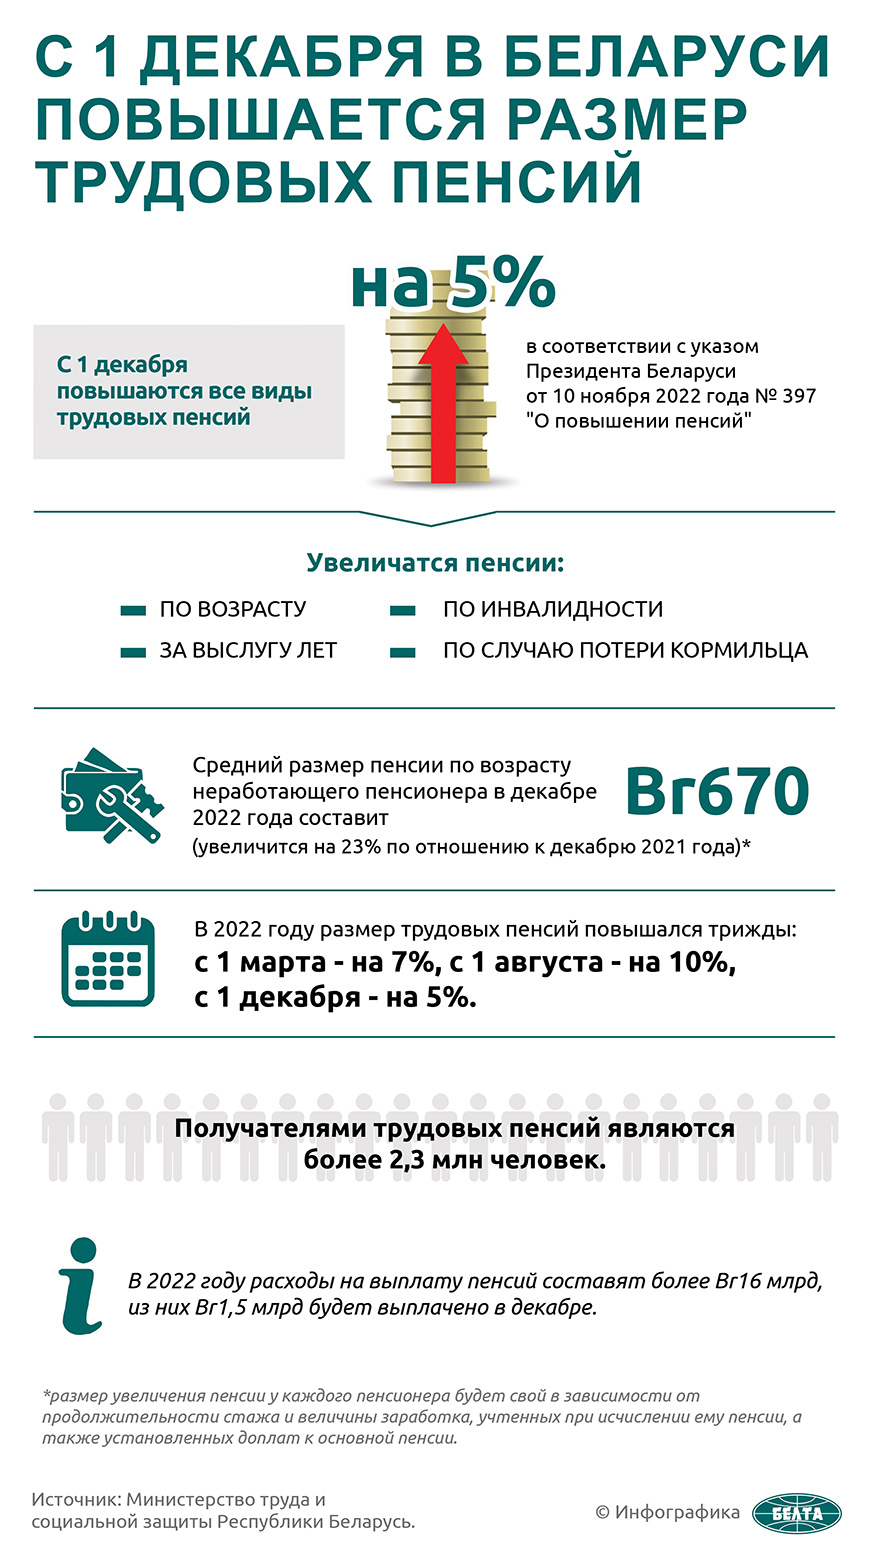 С 1 декабря в Беларуси повышается размер трудовых пенсий